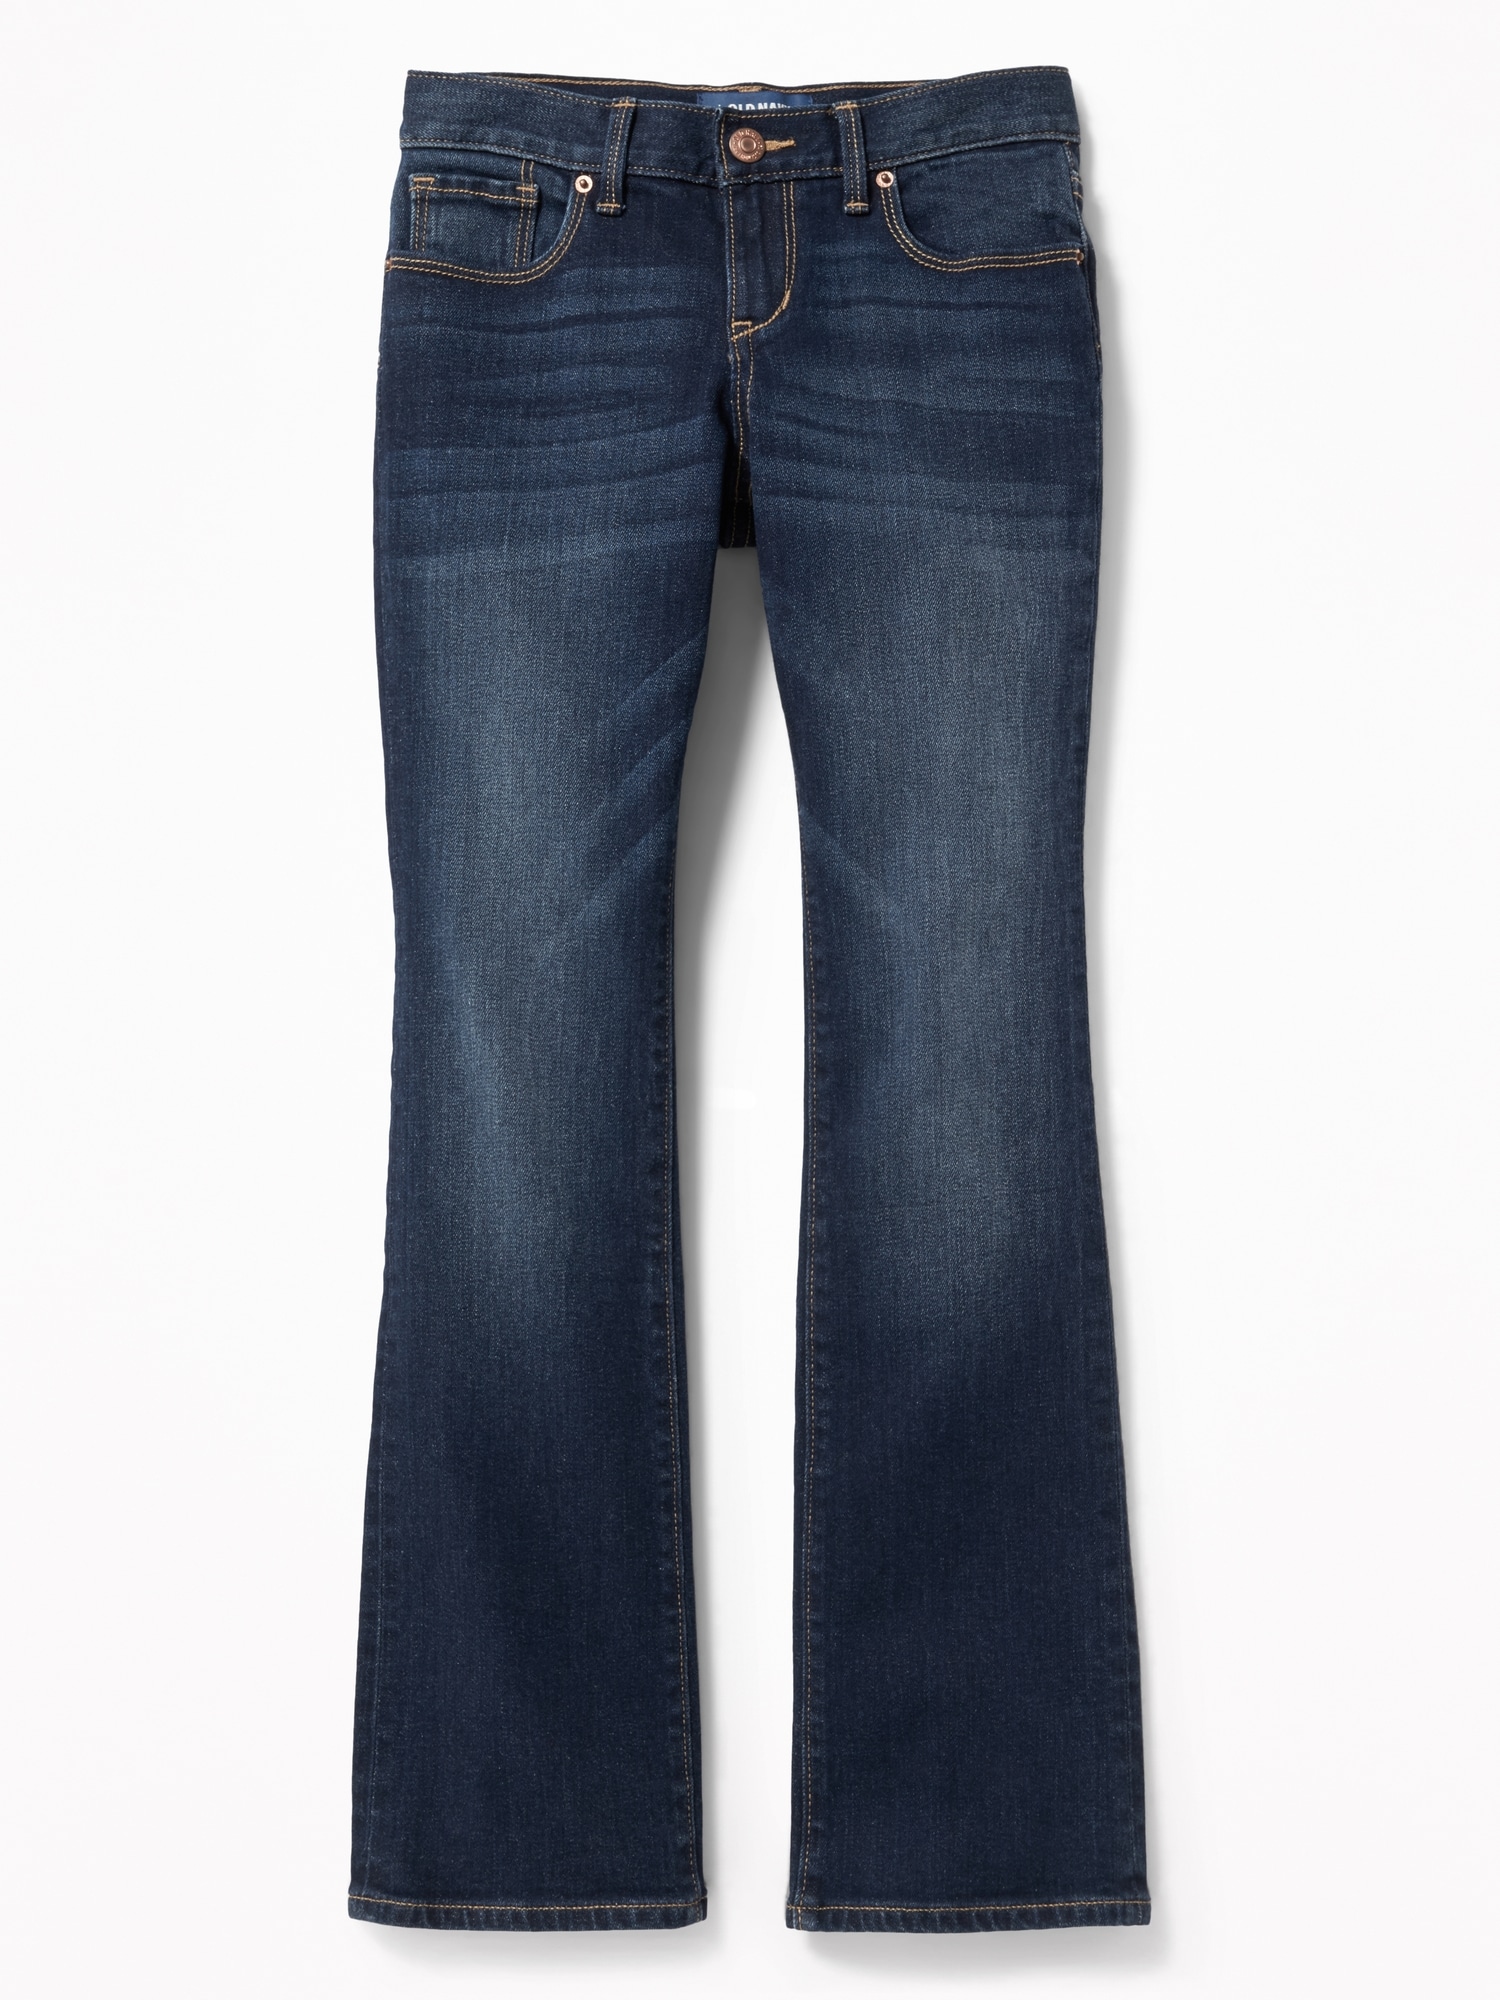 old navy dark blue jeans